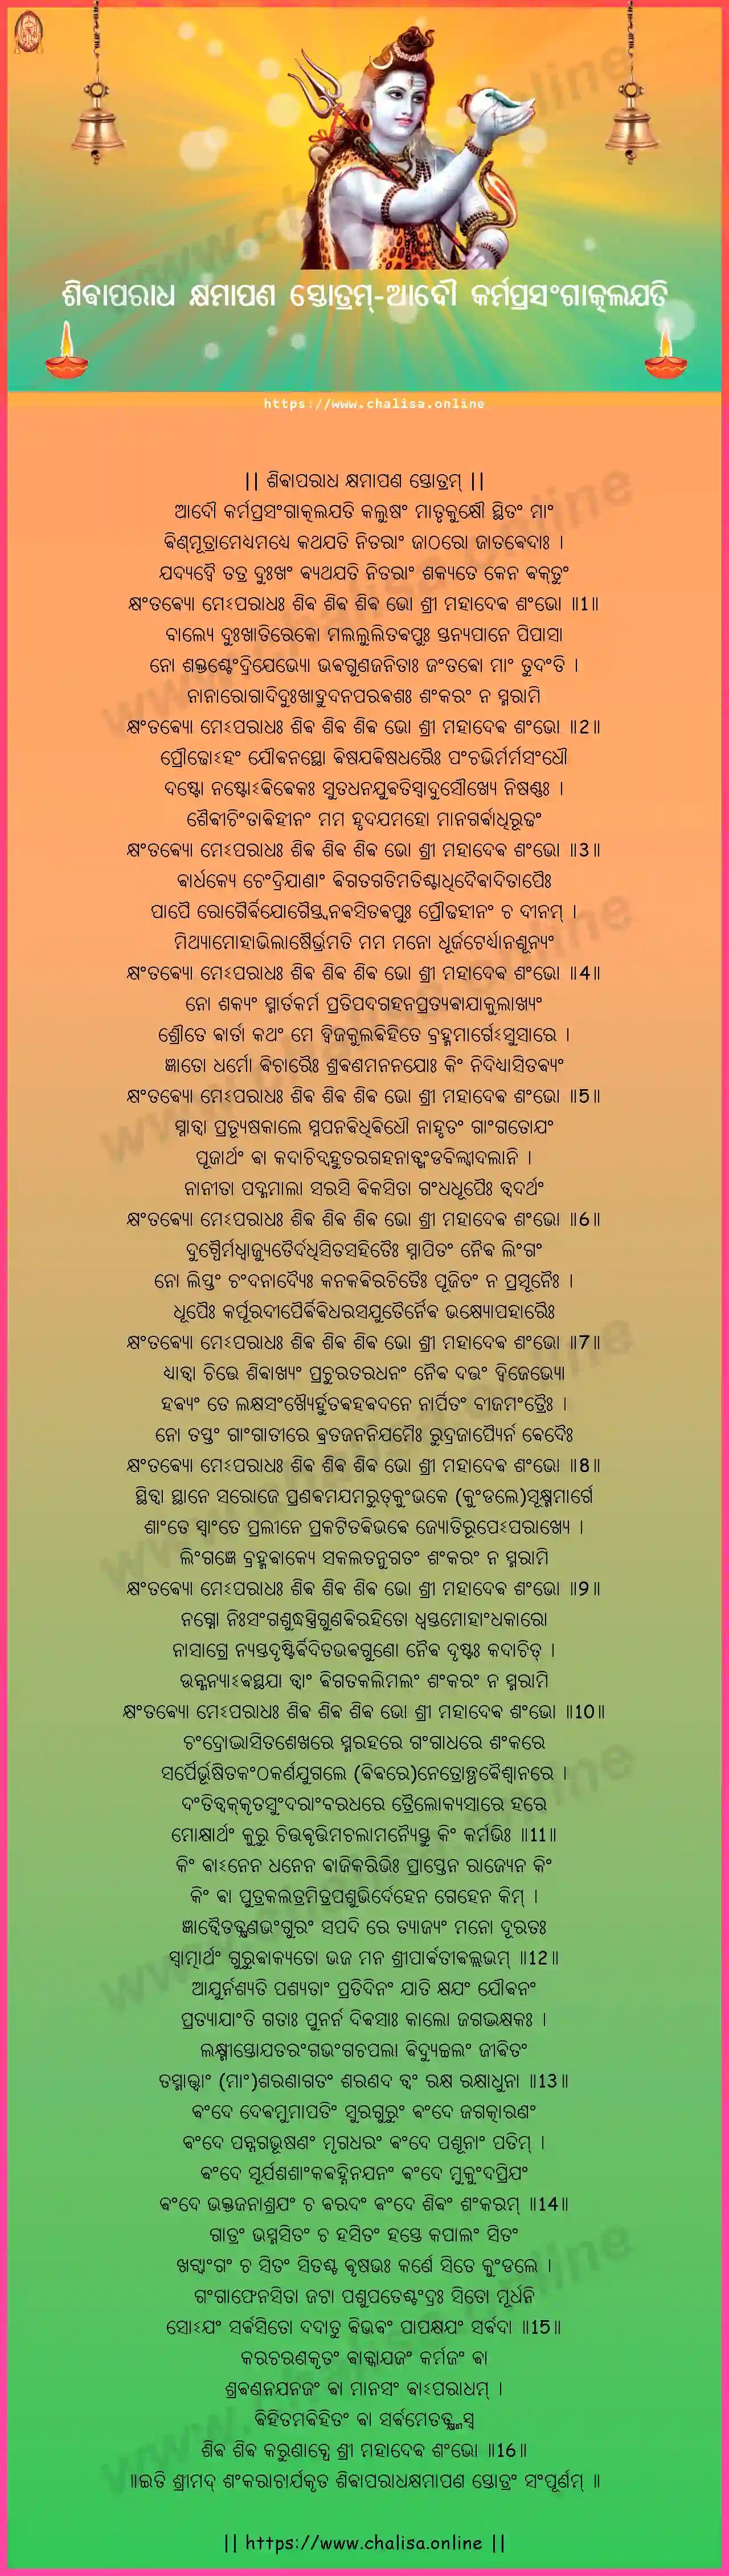 adau-karmaprasangatkalayati-shiva-aparadha-kshamapana-stotram-oriya-oriya-lyrics-download